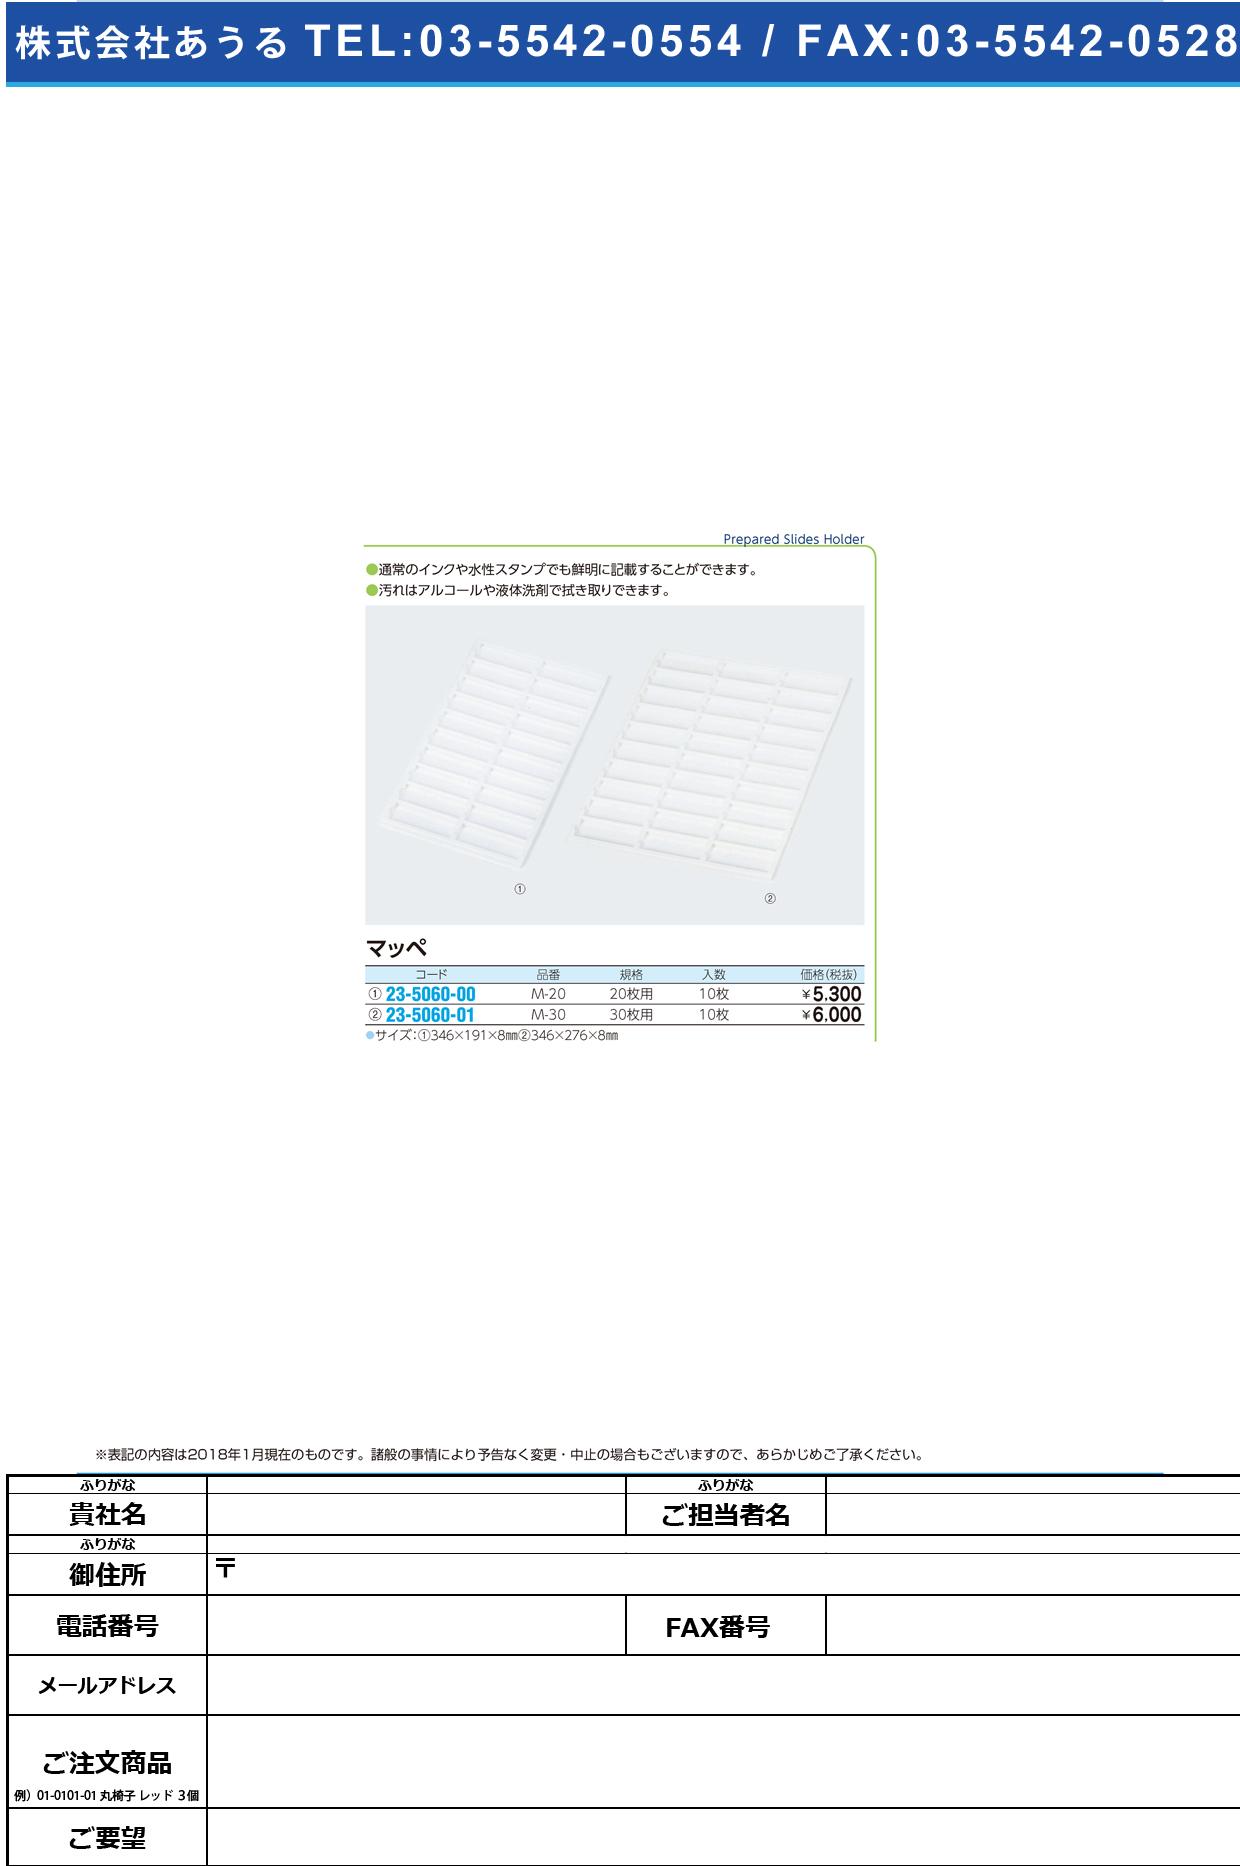 (23-5060-00)松浪マッペ（２０枚用） M-20(10ﾏｲｲﾘ) ﾏﾂﾅﾐﾏｯﾍﾟ20ﾏｲﾖｳ【1箱単位】【2019年カタログ商品】